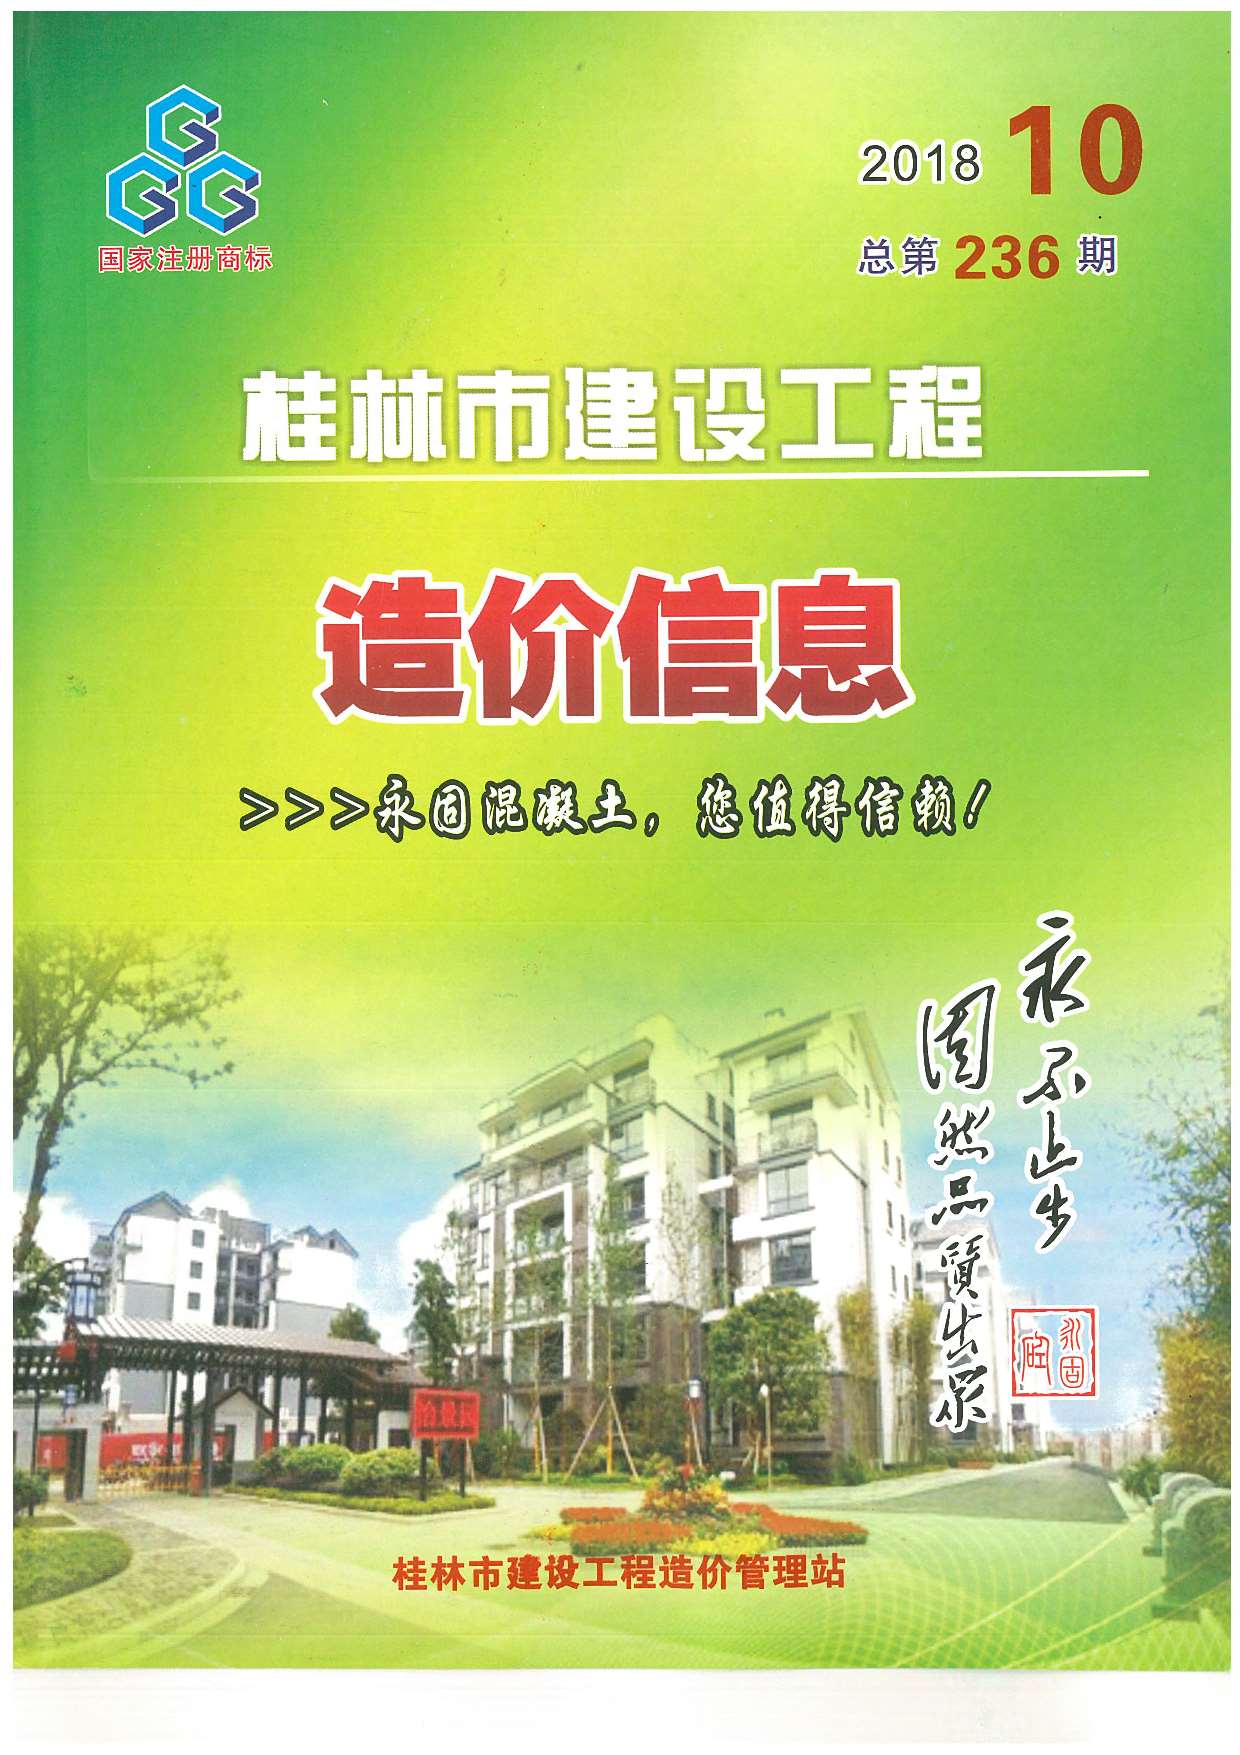 桂林市2018年10月建设工程造价信息